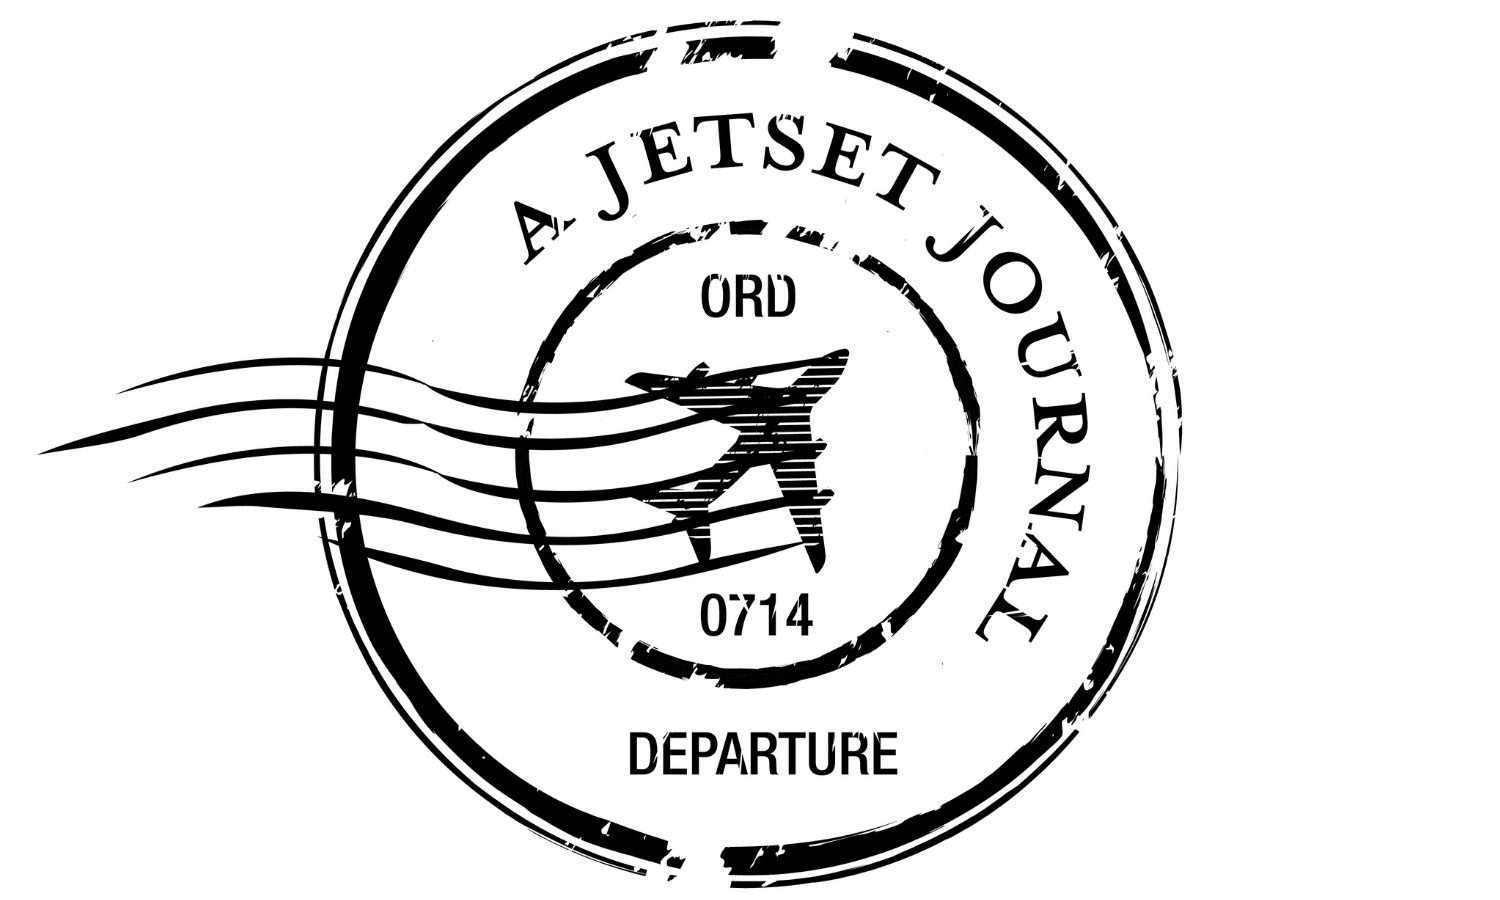 A Jetset Journal